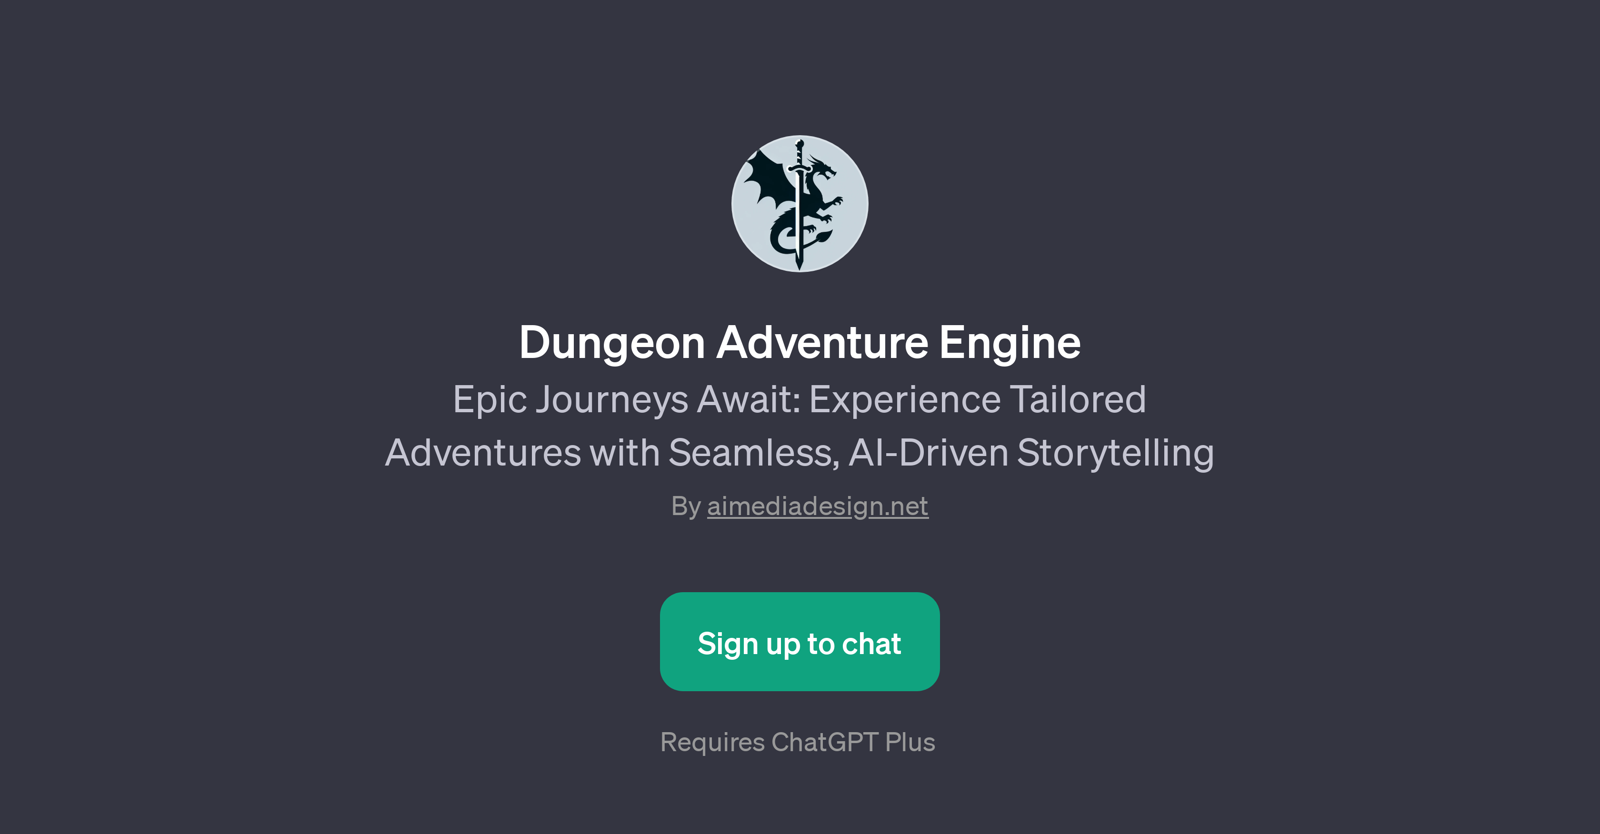 Dungeon Adventure Engine website